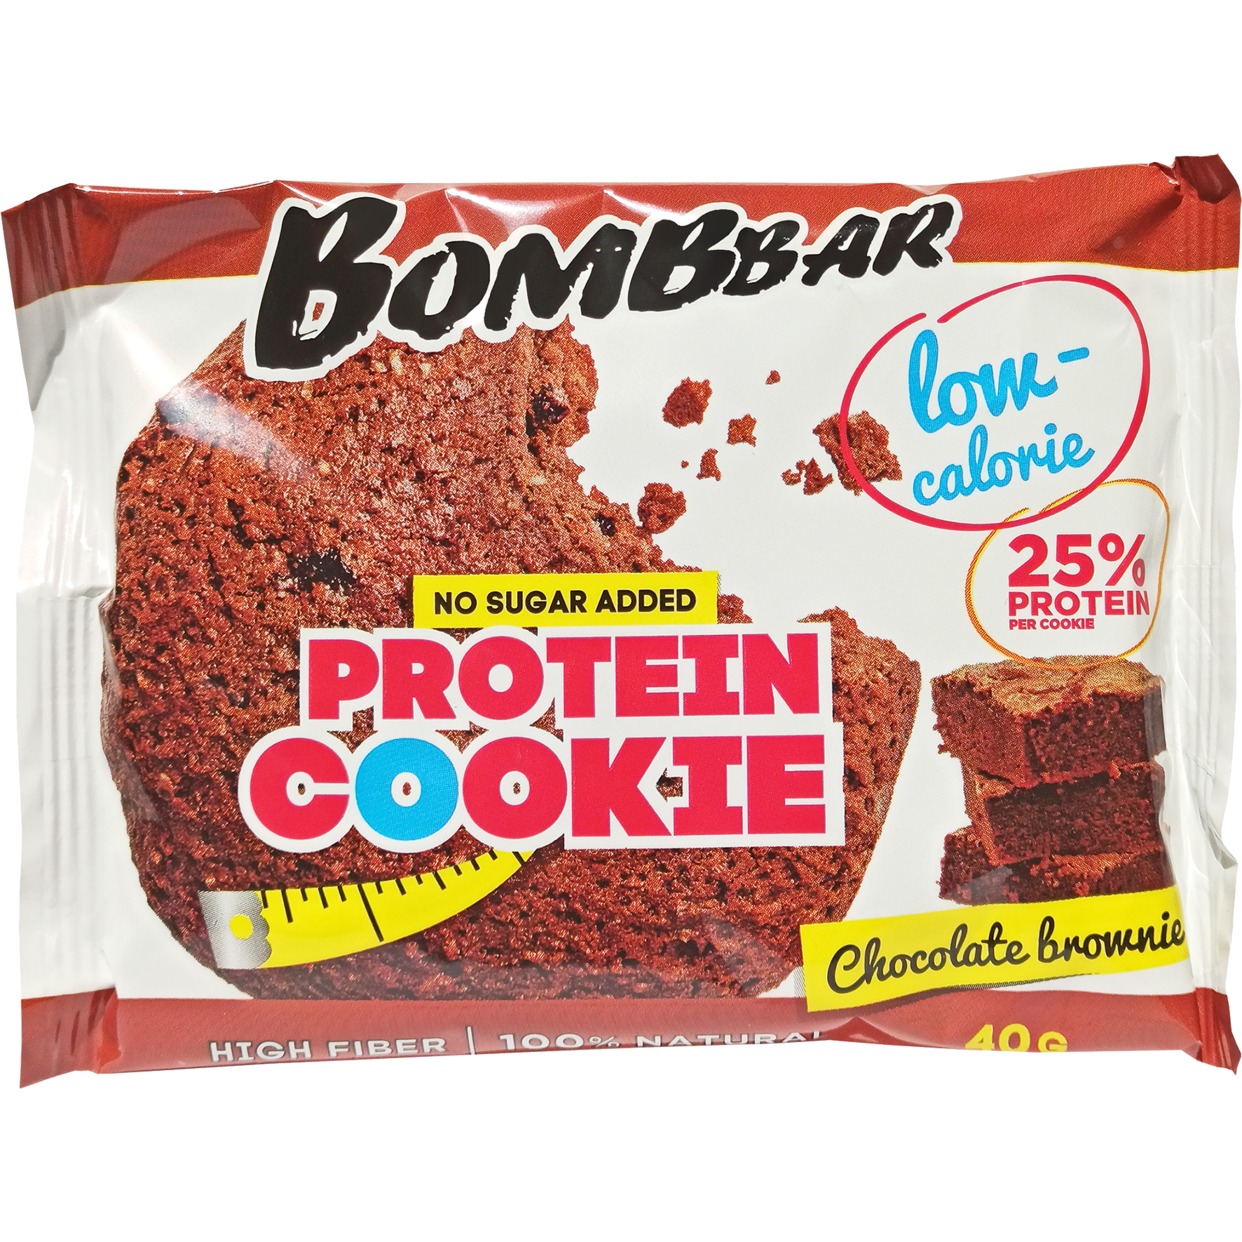 BOMBBAR Печенье неглазированное " Шоколадный брауни" 40 гр. по акции в Пятерочке